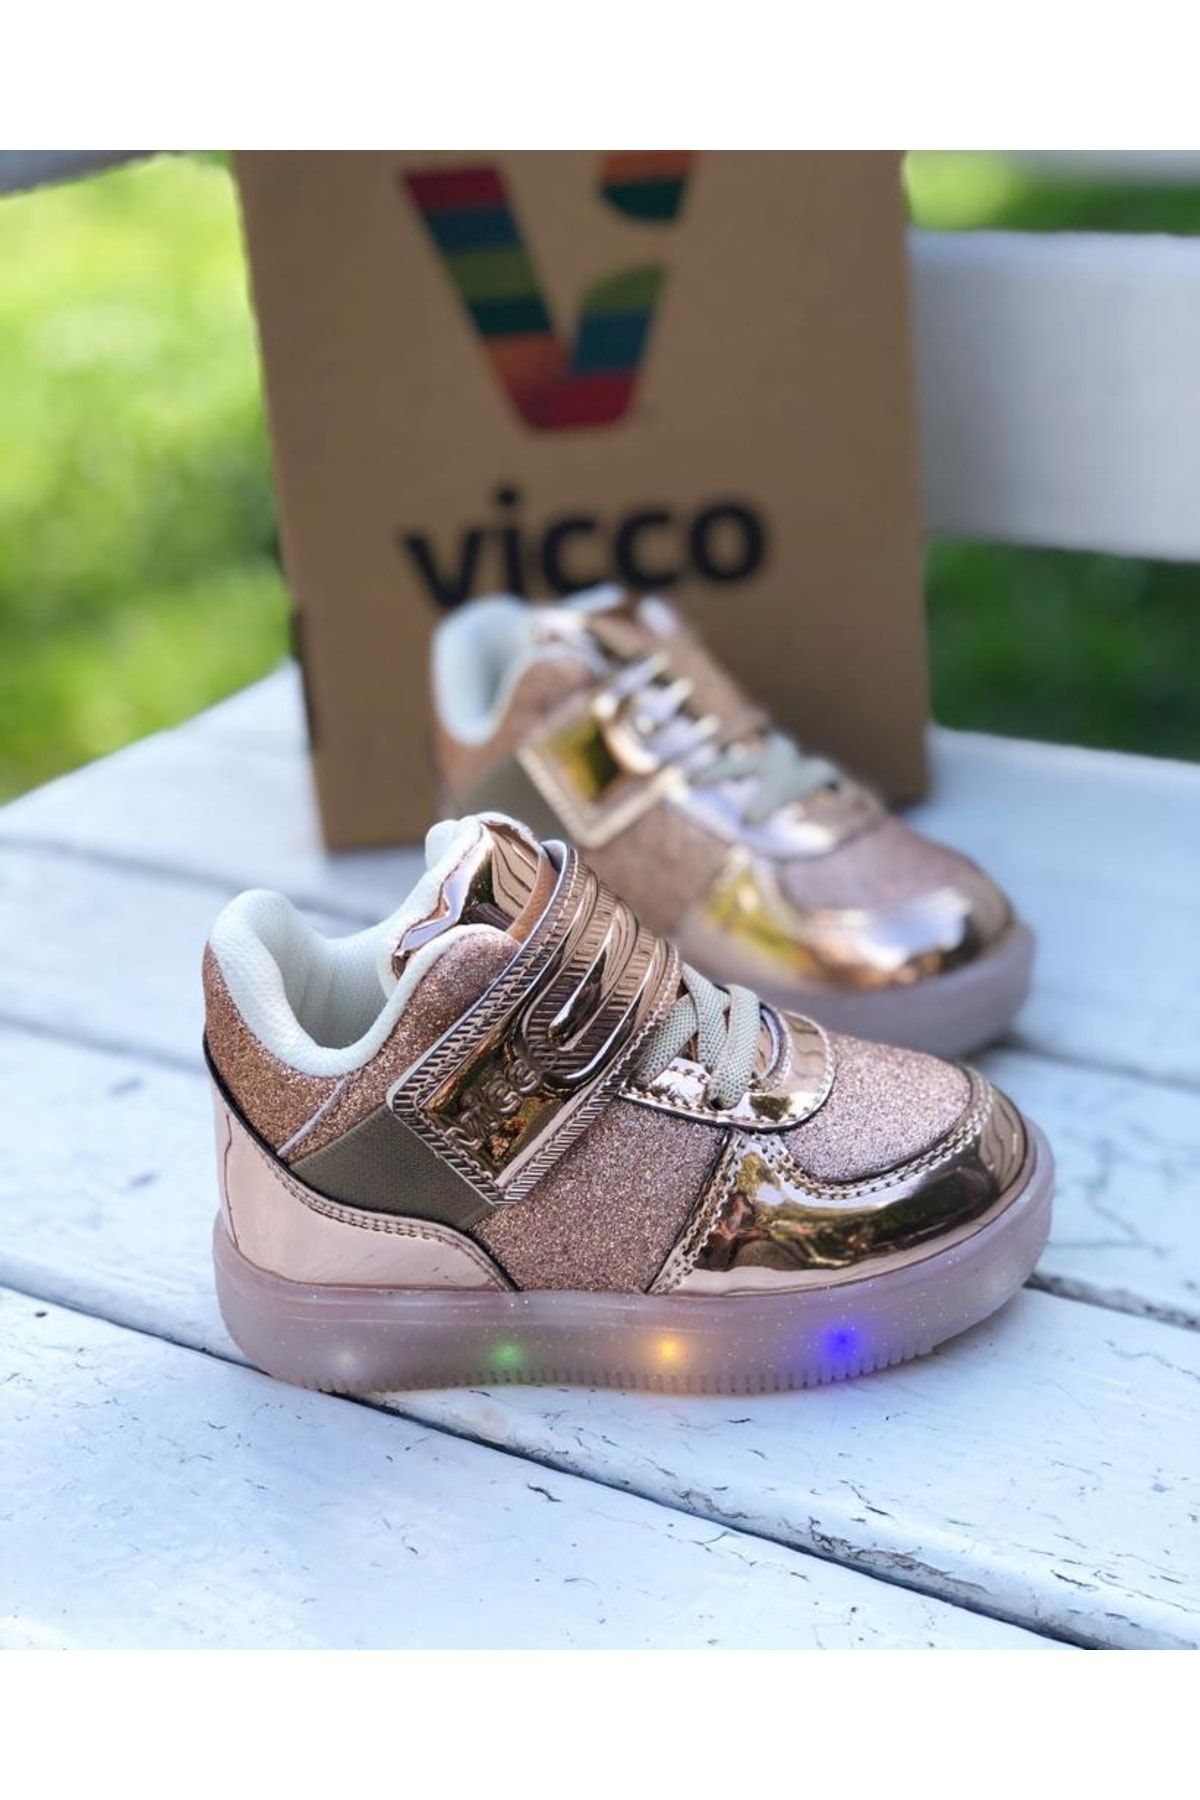 Vicco Altın - Mimi Işıklı Spor Sneaker Bot